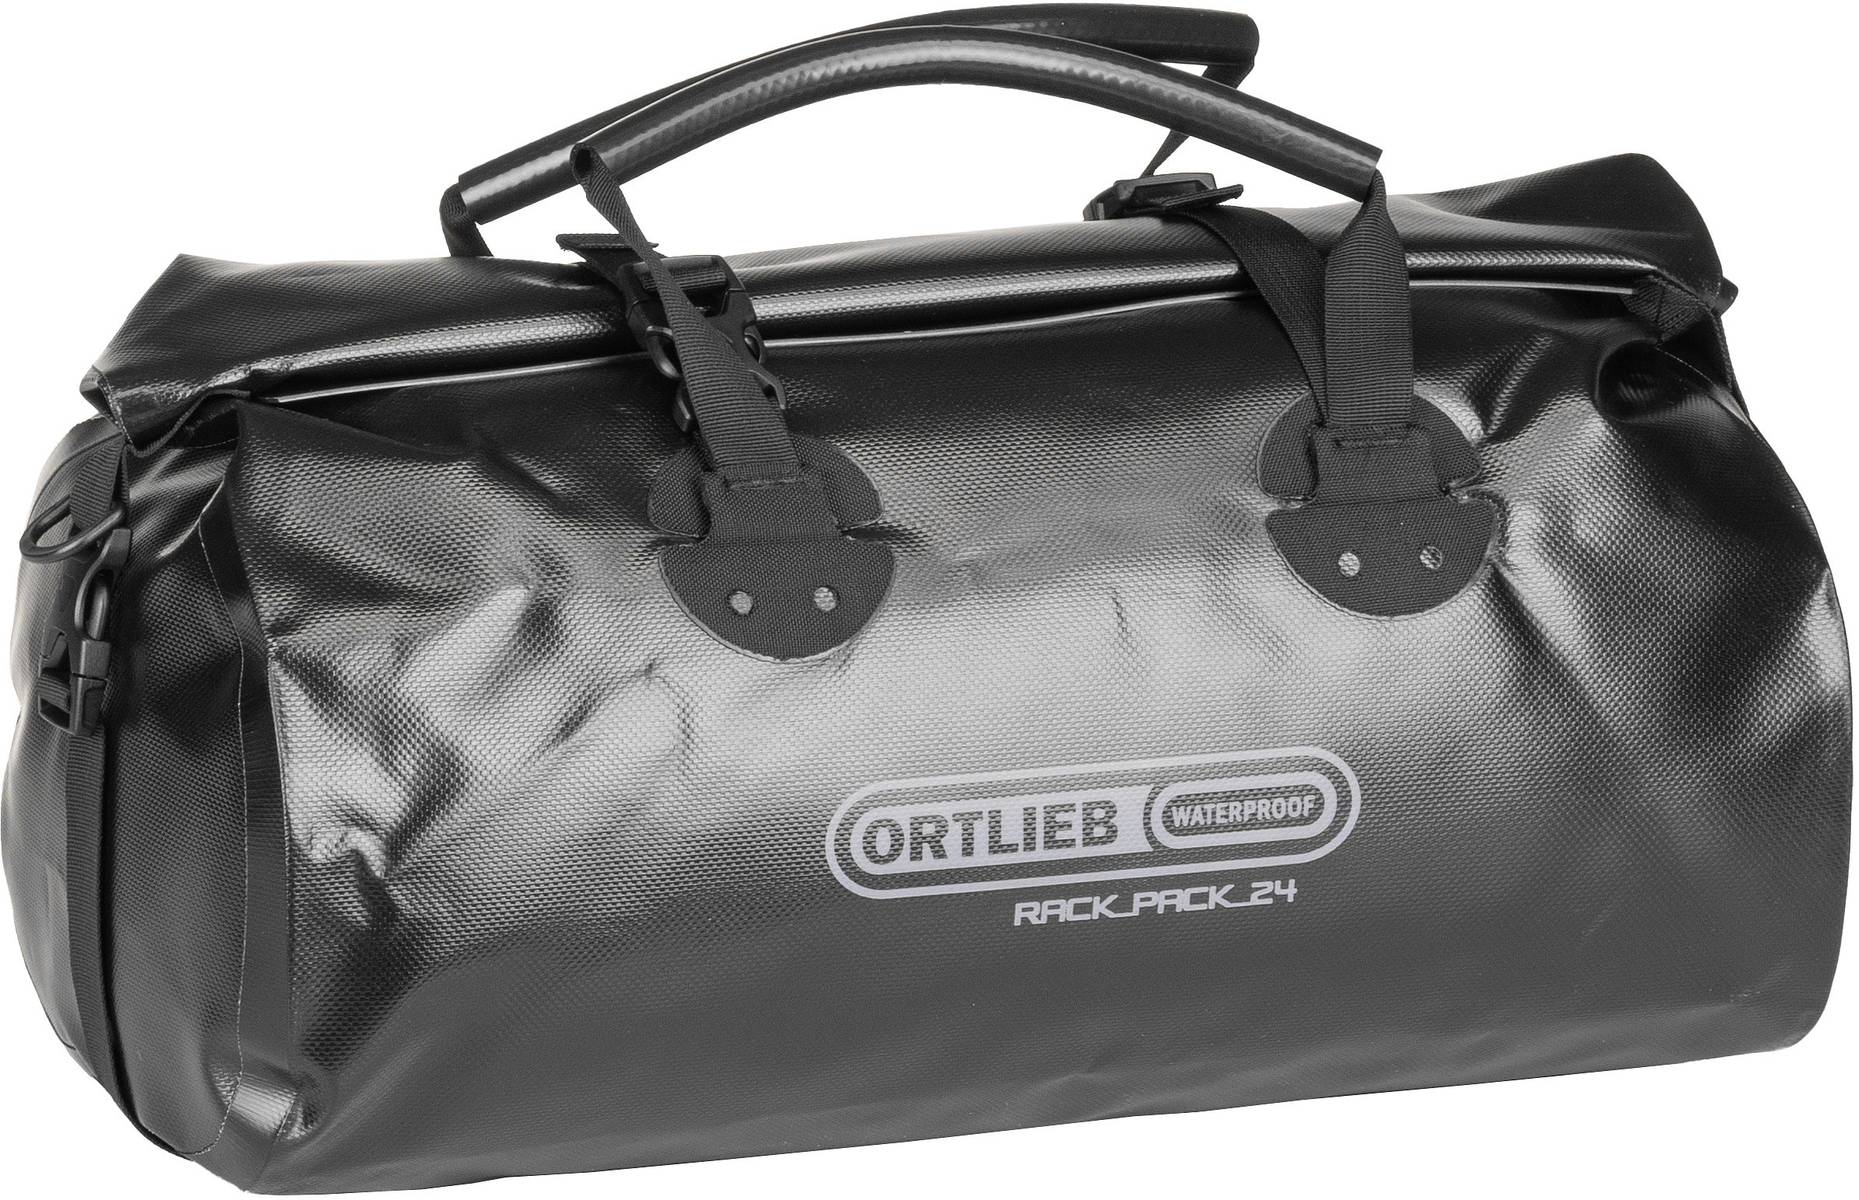 ORTLIEB Rack-Pack 24L  in Schwarz (24 Liter), Reisetasche